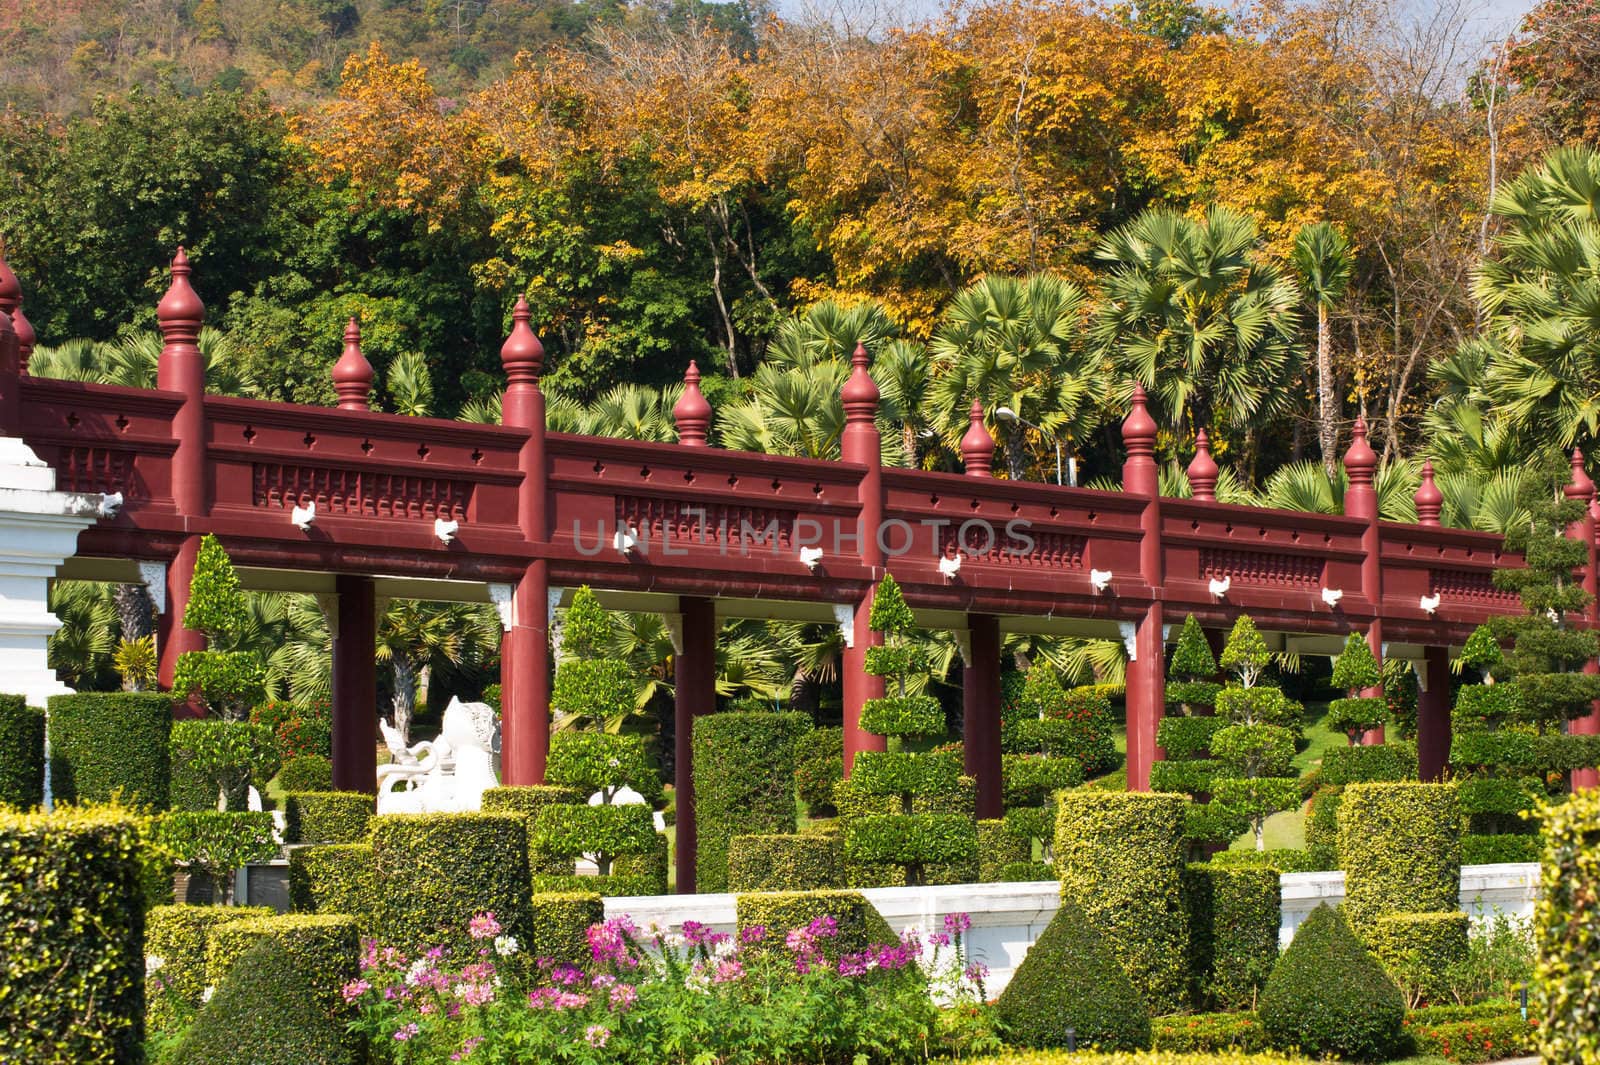 Red wooden bridge in the garden by pigdevilphoto